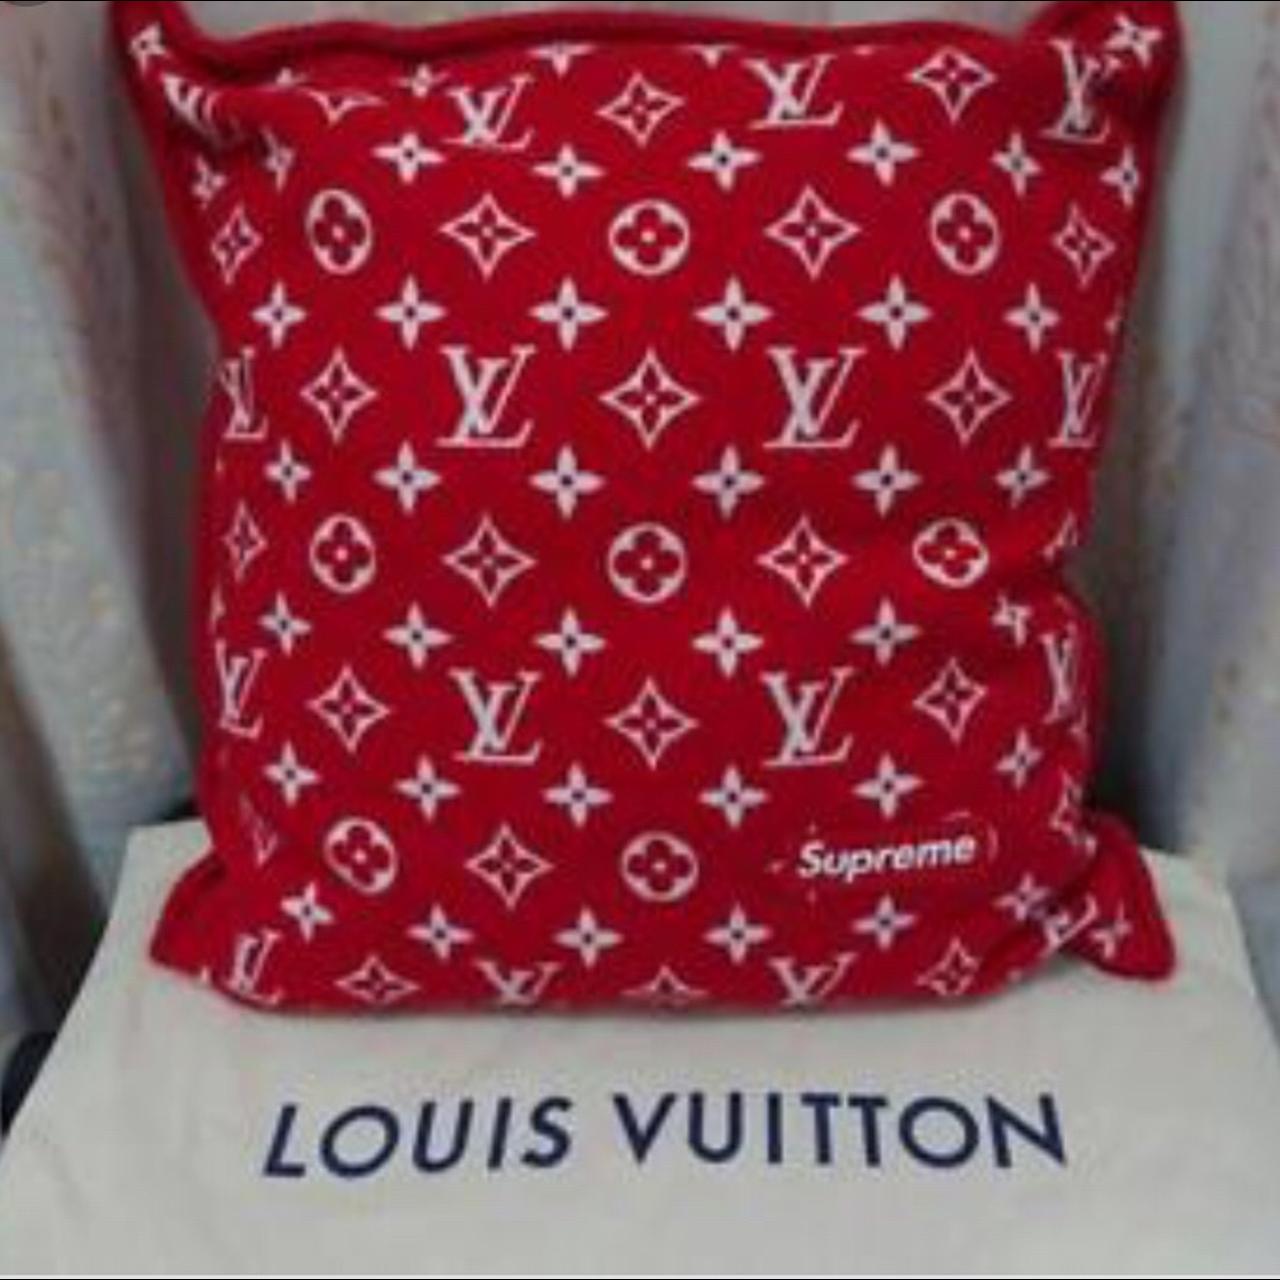 Louis Vuitton x Supreme Monogram Throw Pillow - Red Pillows